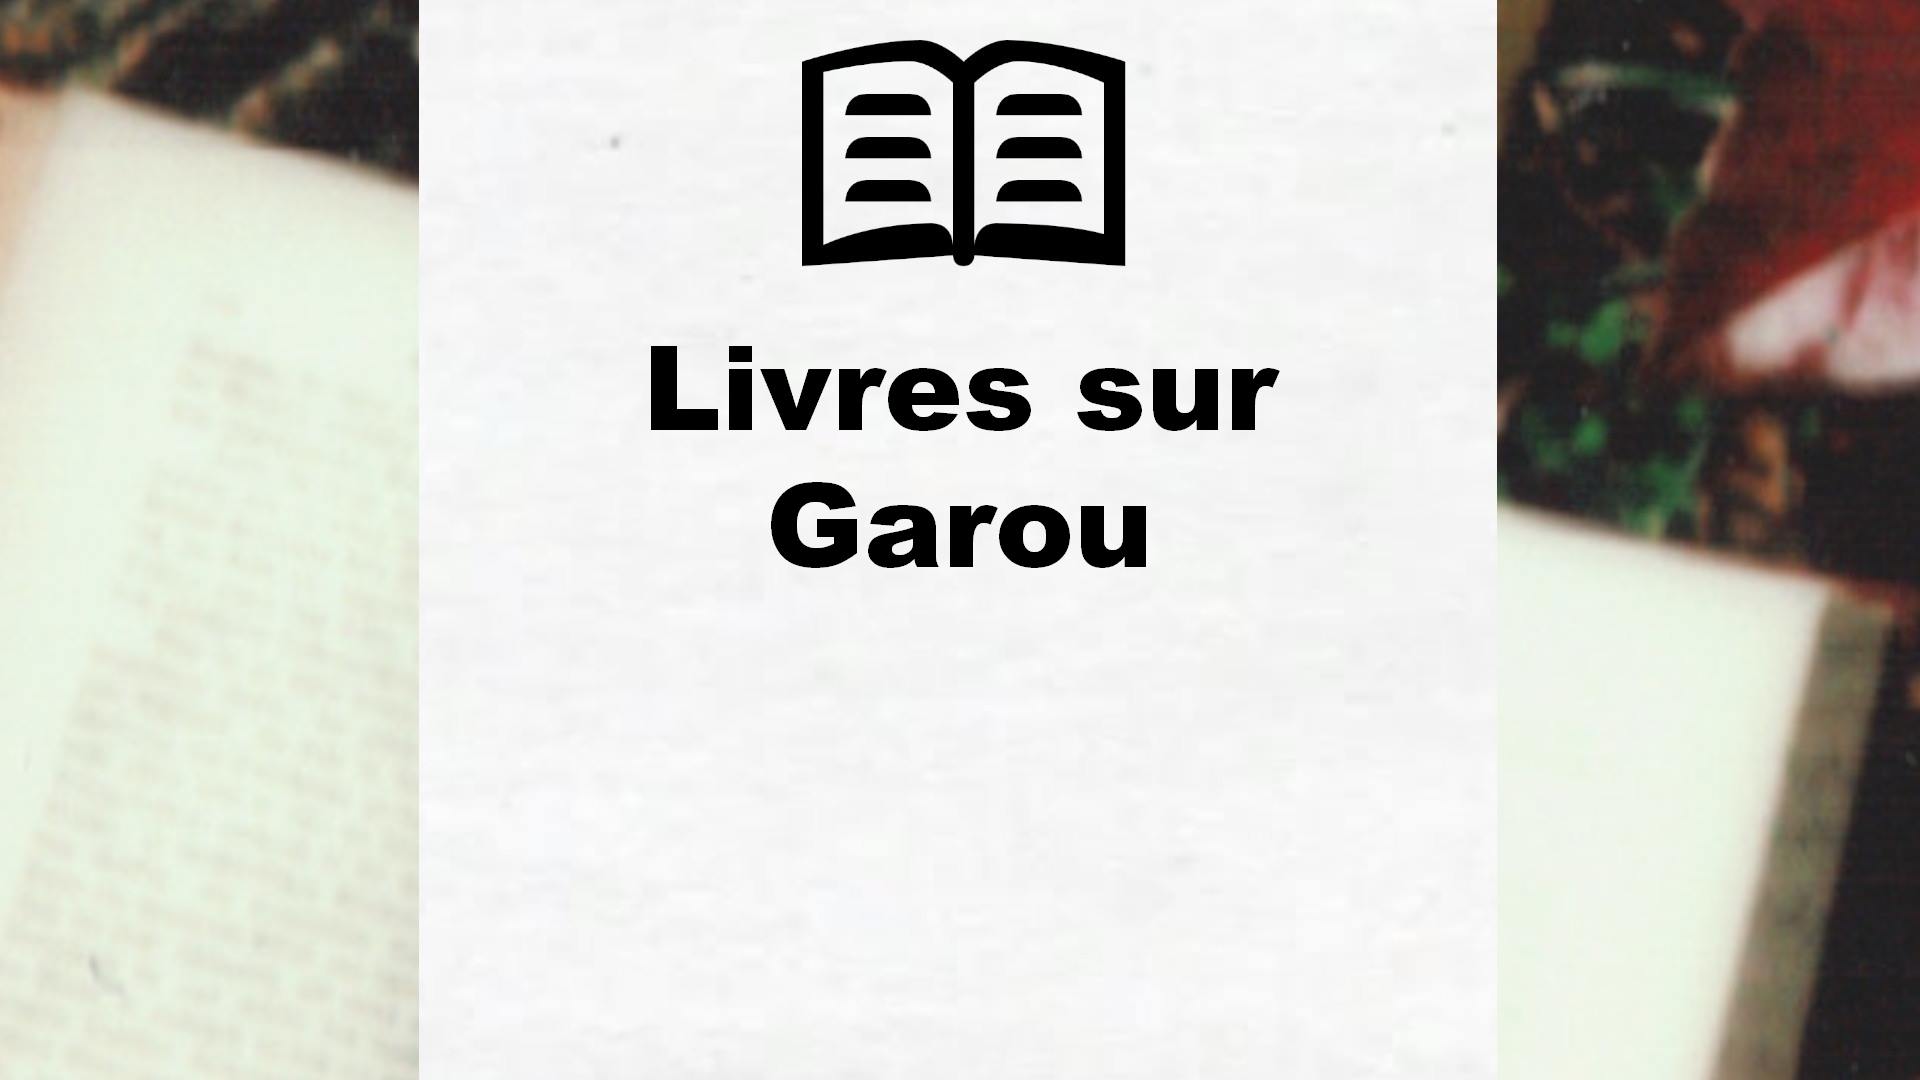 Livres sur Garou